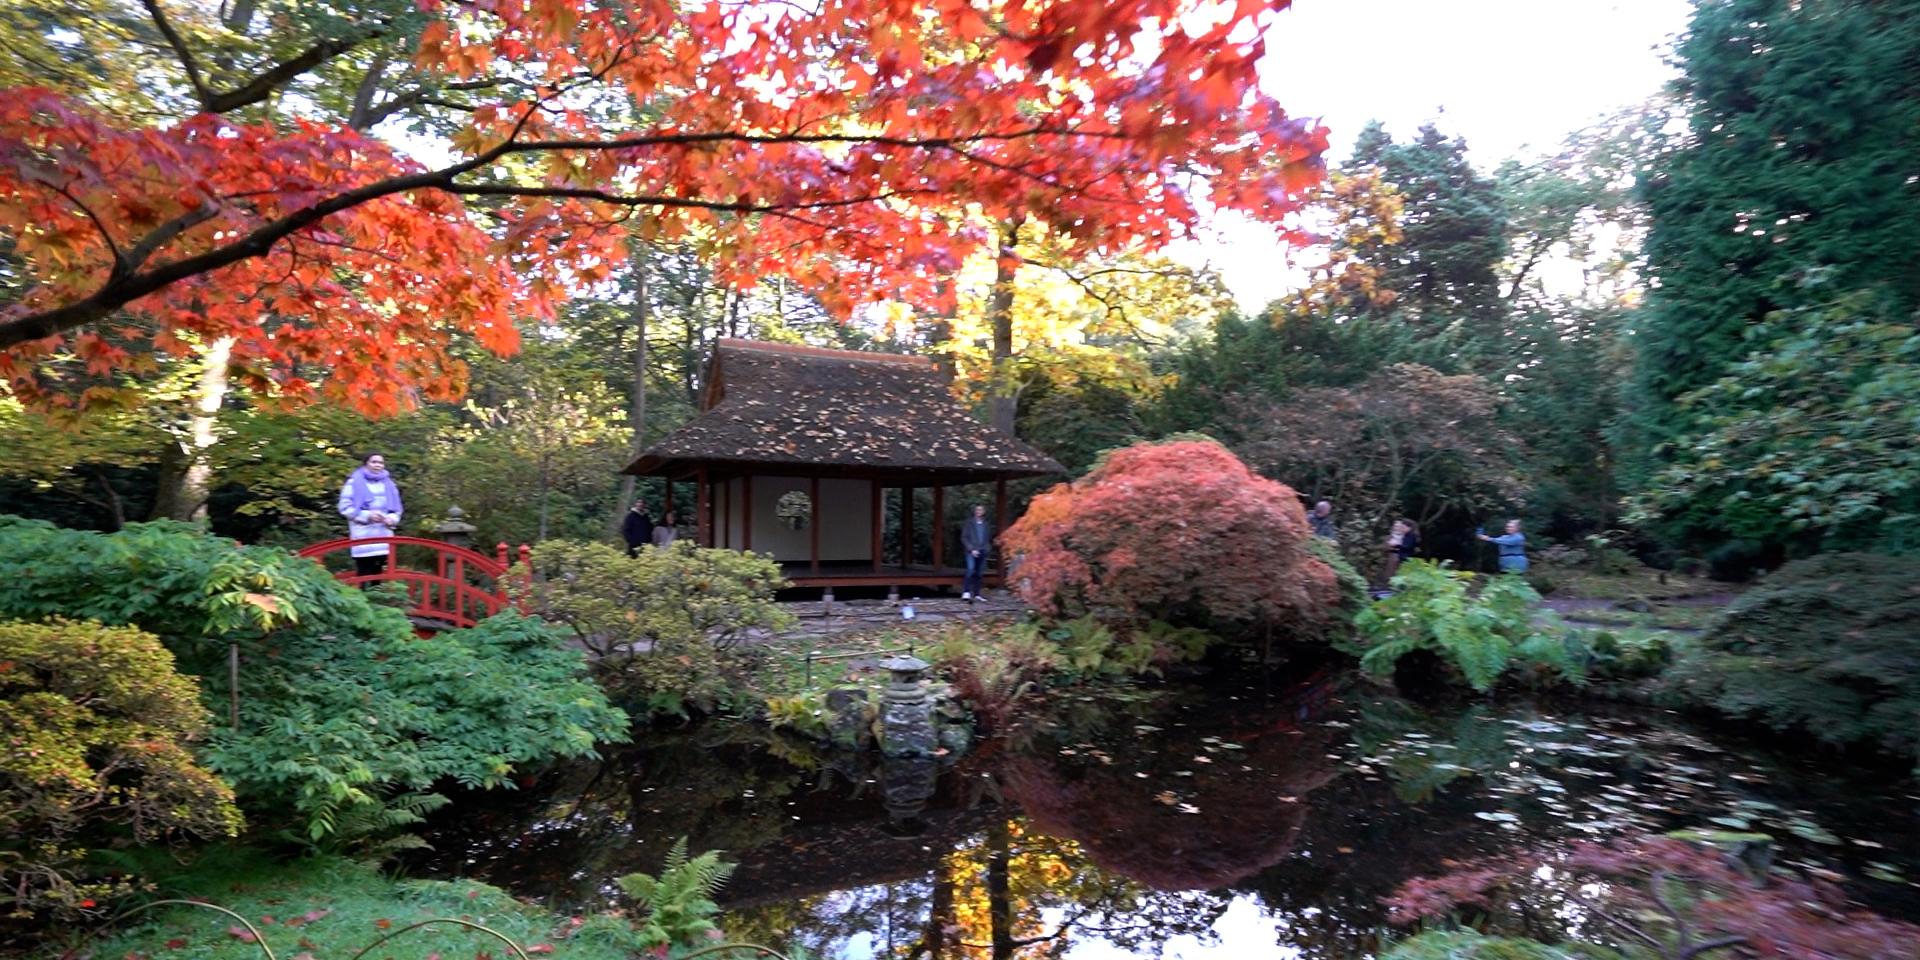 Japanse tuin Clingendael